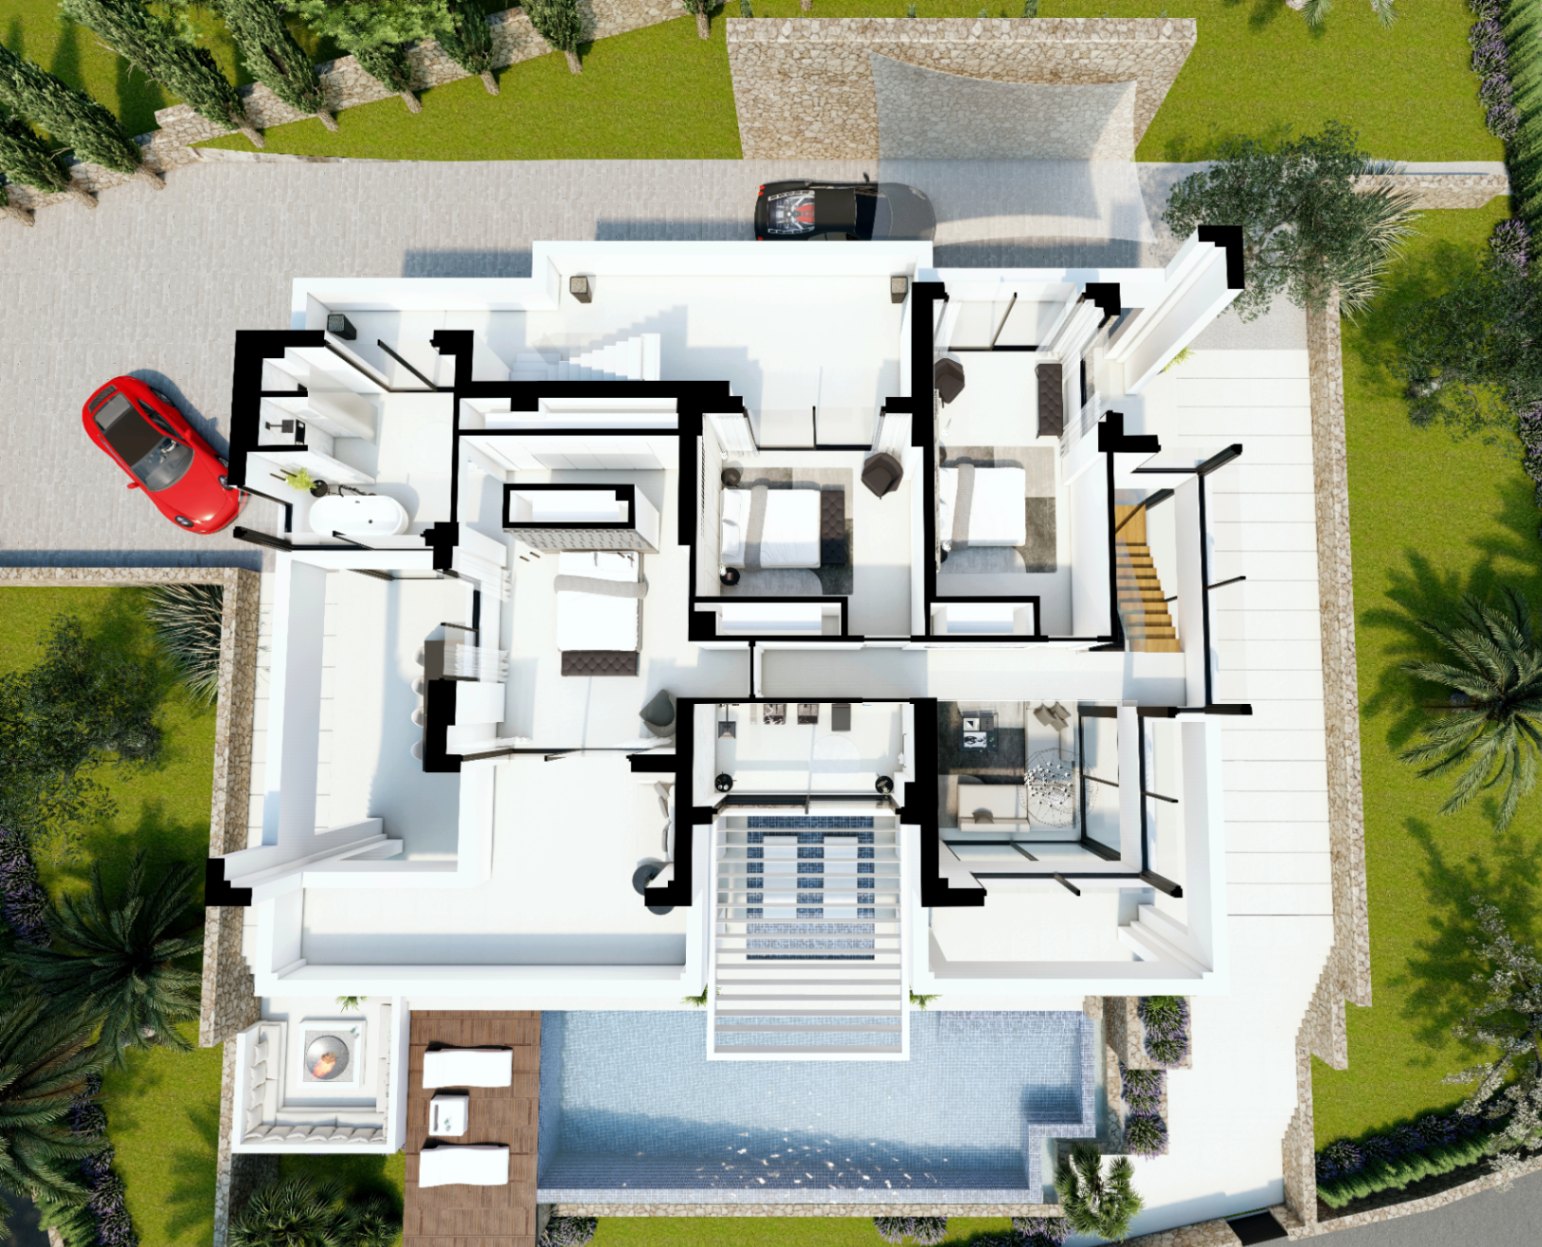 Exclusive modern villa in Benissa